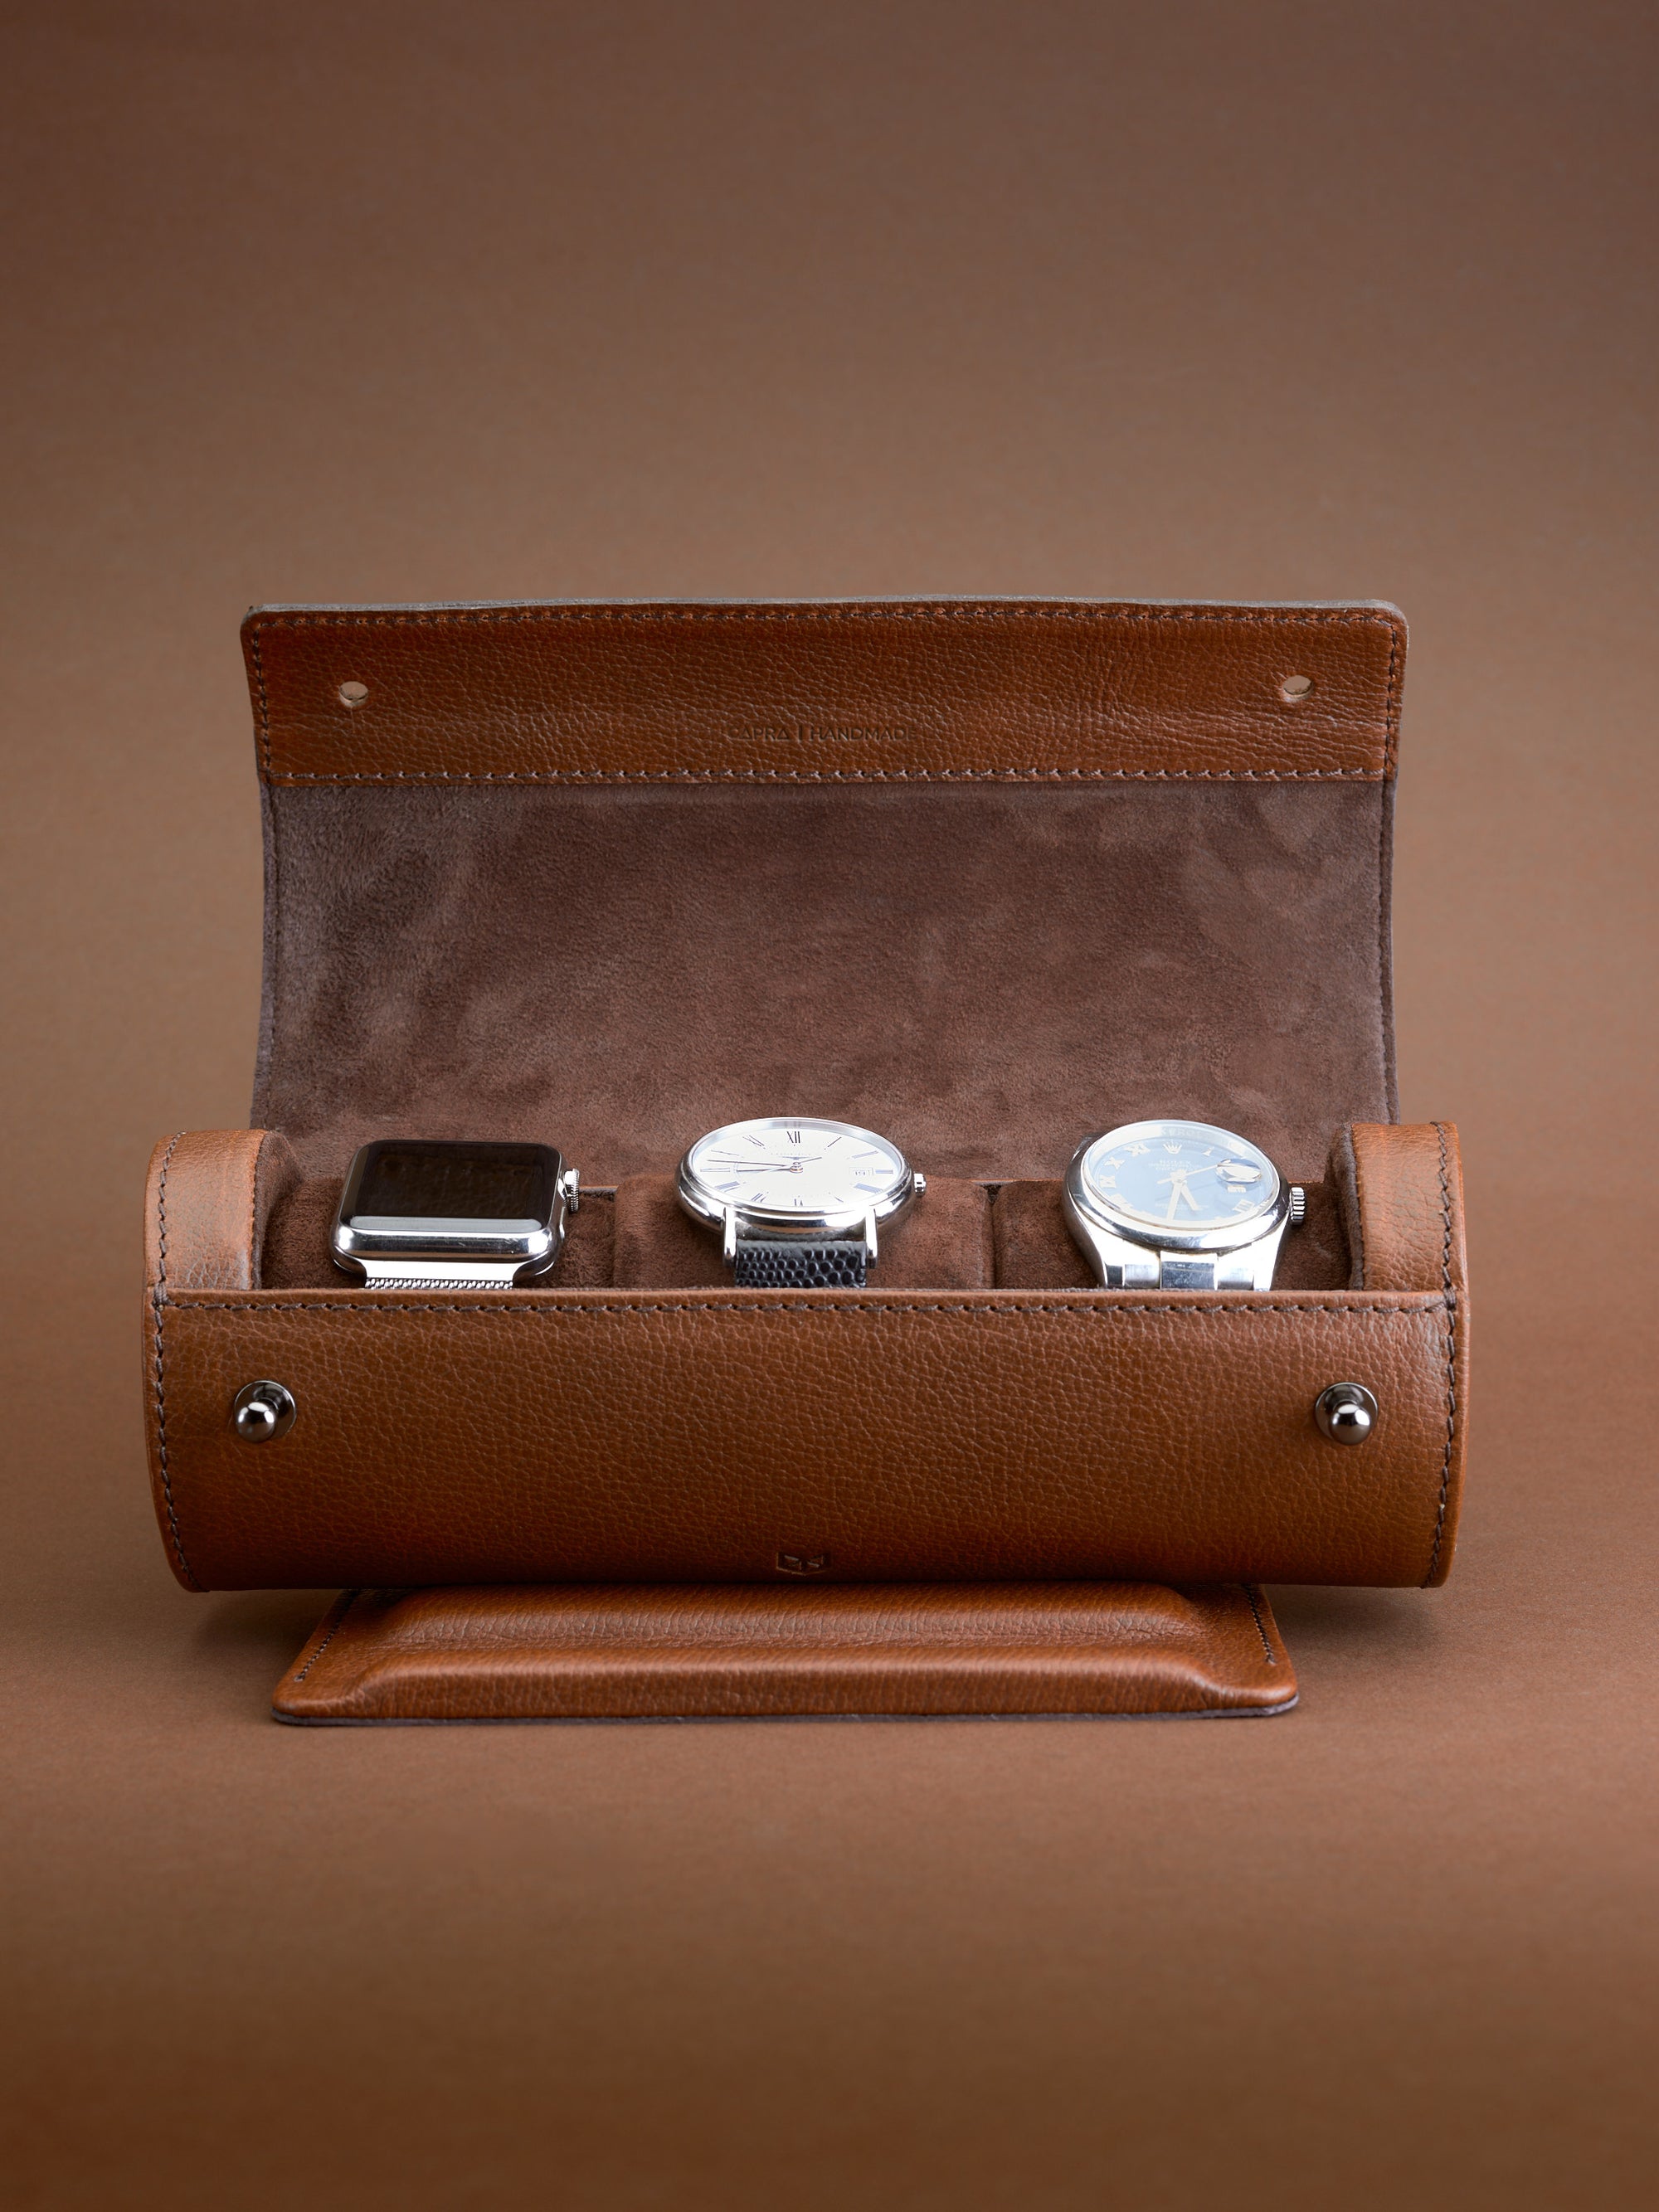 Watch Case for Men - Watch Roll Travel Case - Storage Organizer and Display  - Mirage Watch Roll Cases, Midnight Blue 3-watch case : M Mirage Luxury  Travel: Amazon.in: Watches